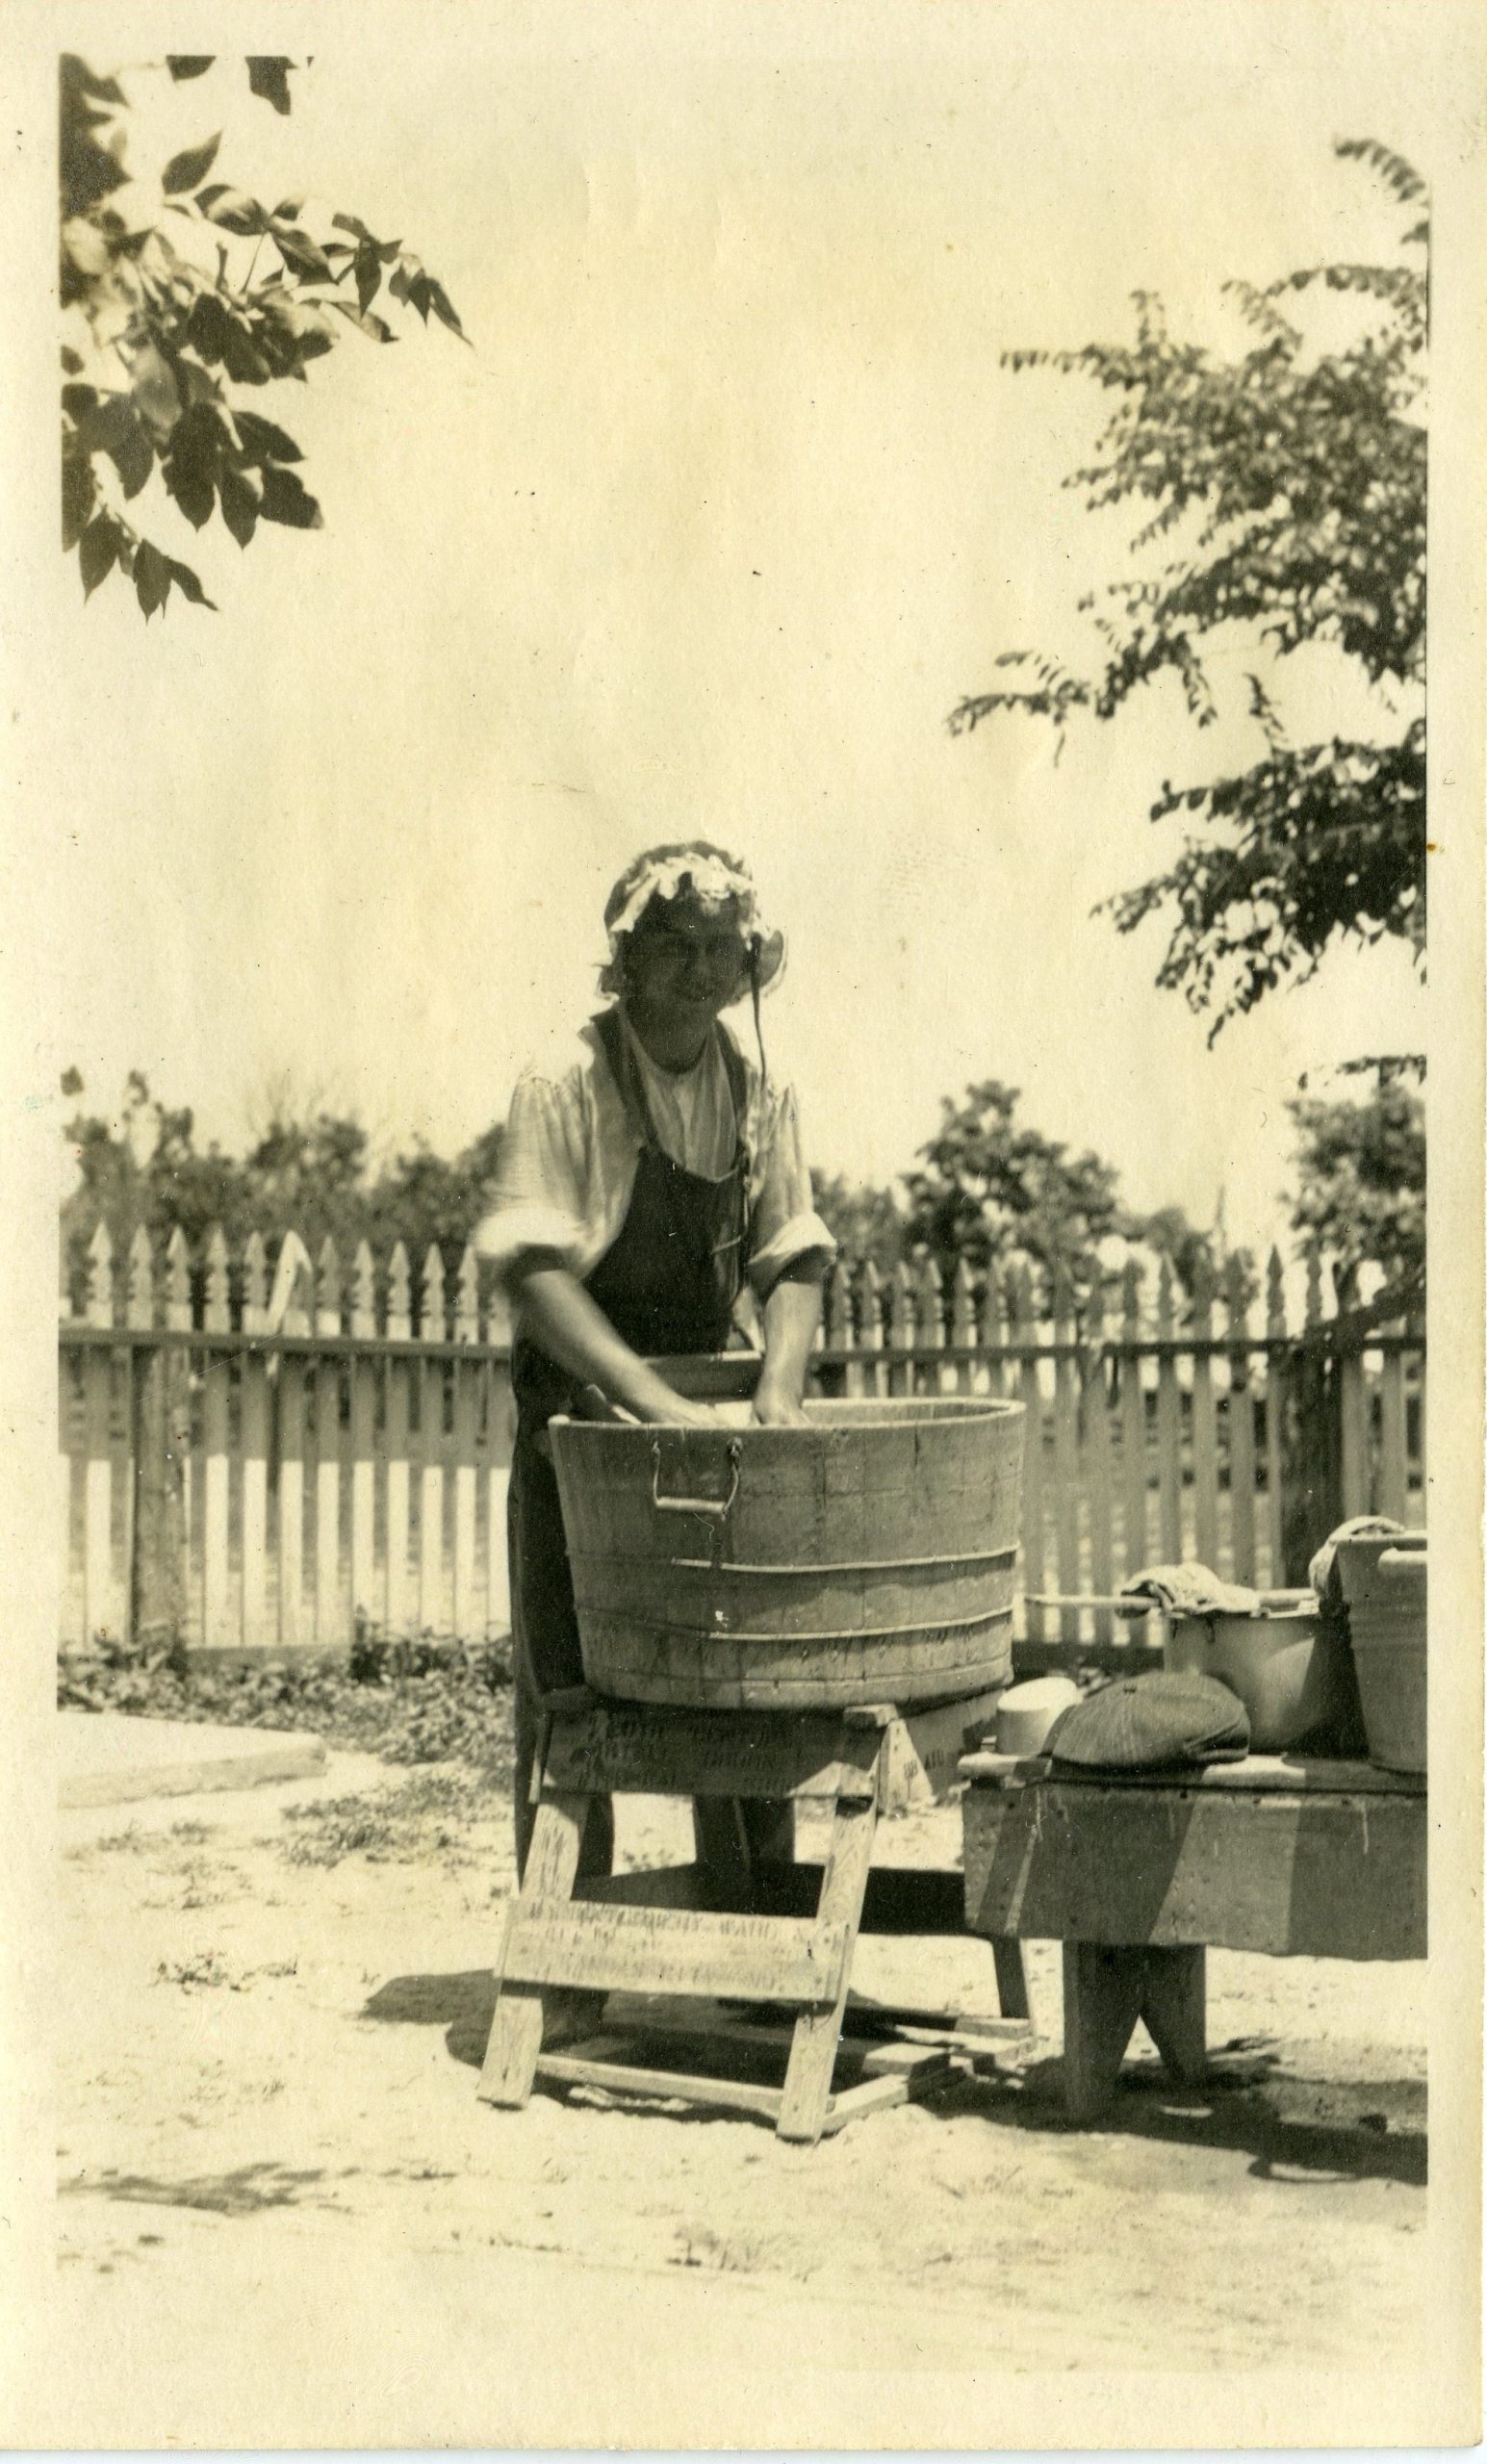 Woman and wash bin